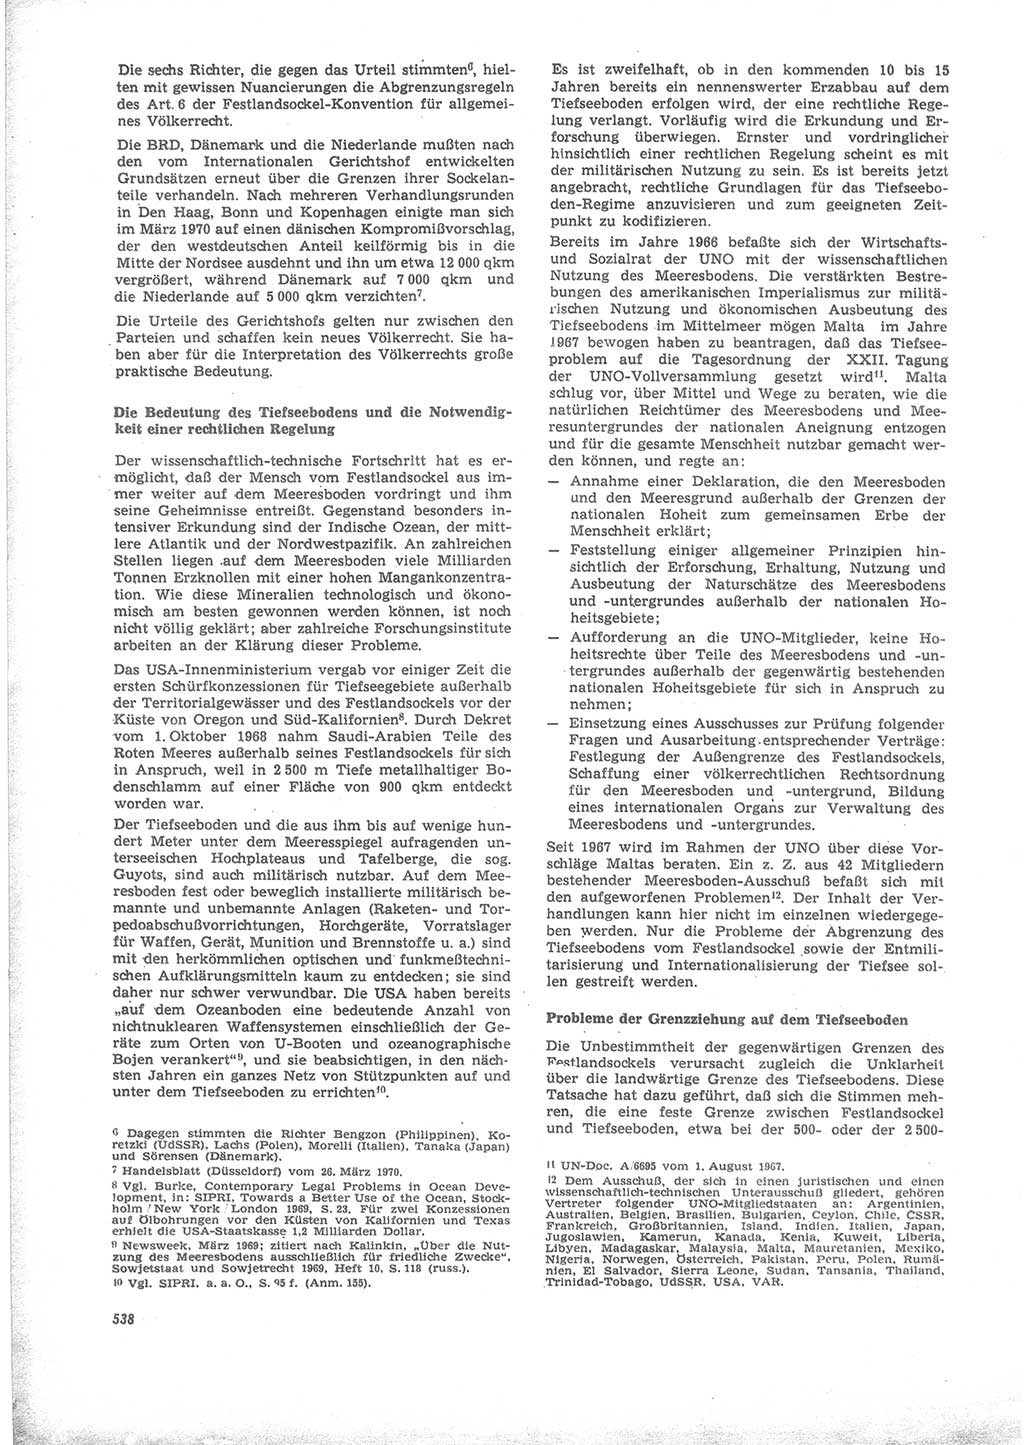 Neue Justiz (NJ), Zeitschrift für Recht und Rechtswissenschaft [Deutsche Demokratische Republik (DDR)], 24. Jahrgang 1970, Seite 538 (NJ DDR 1970, S. 538)